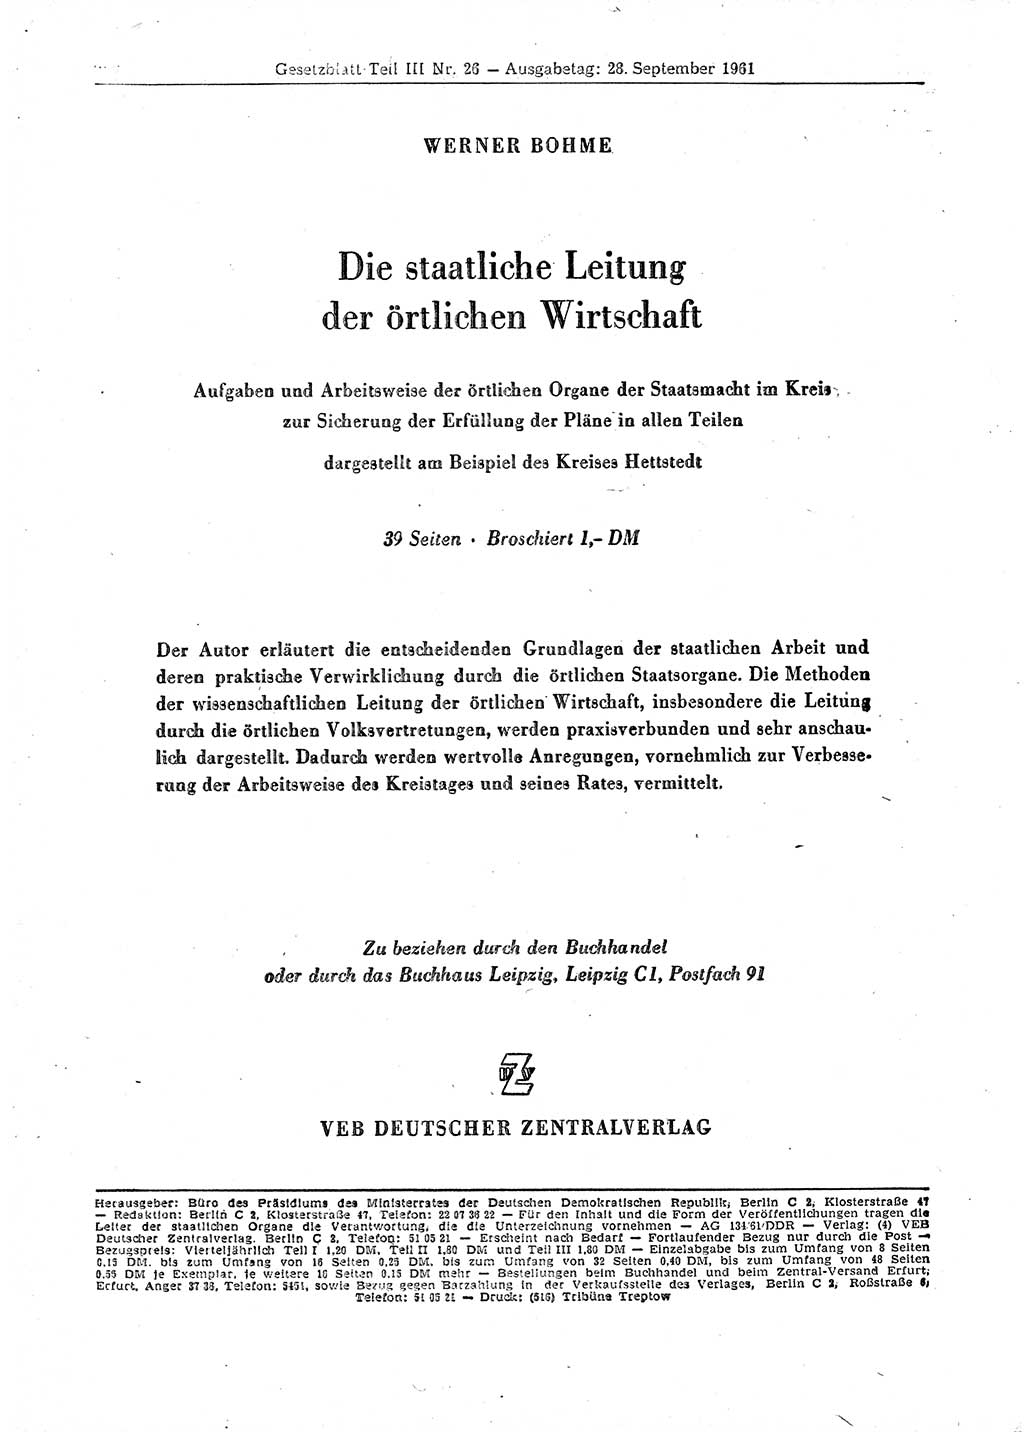 Gesetzblatt (GBl.) der Deutschen Demokratischen Republik (DDR) Teil ⅠⅠⅠ 1961, Seite 326 (GBl. DDR ⅠⅠⅠ 1961, S. 326)